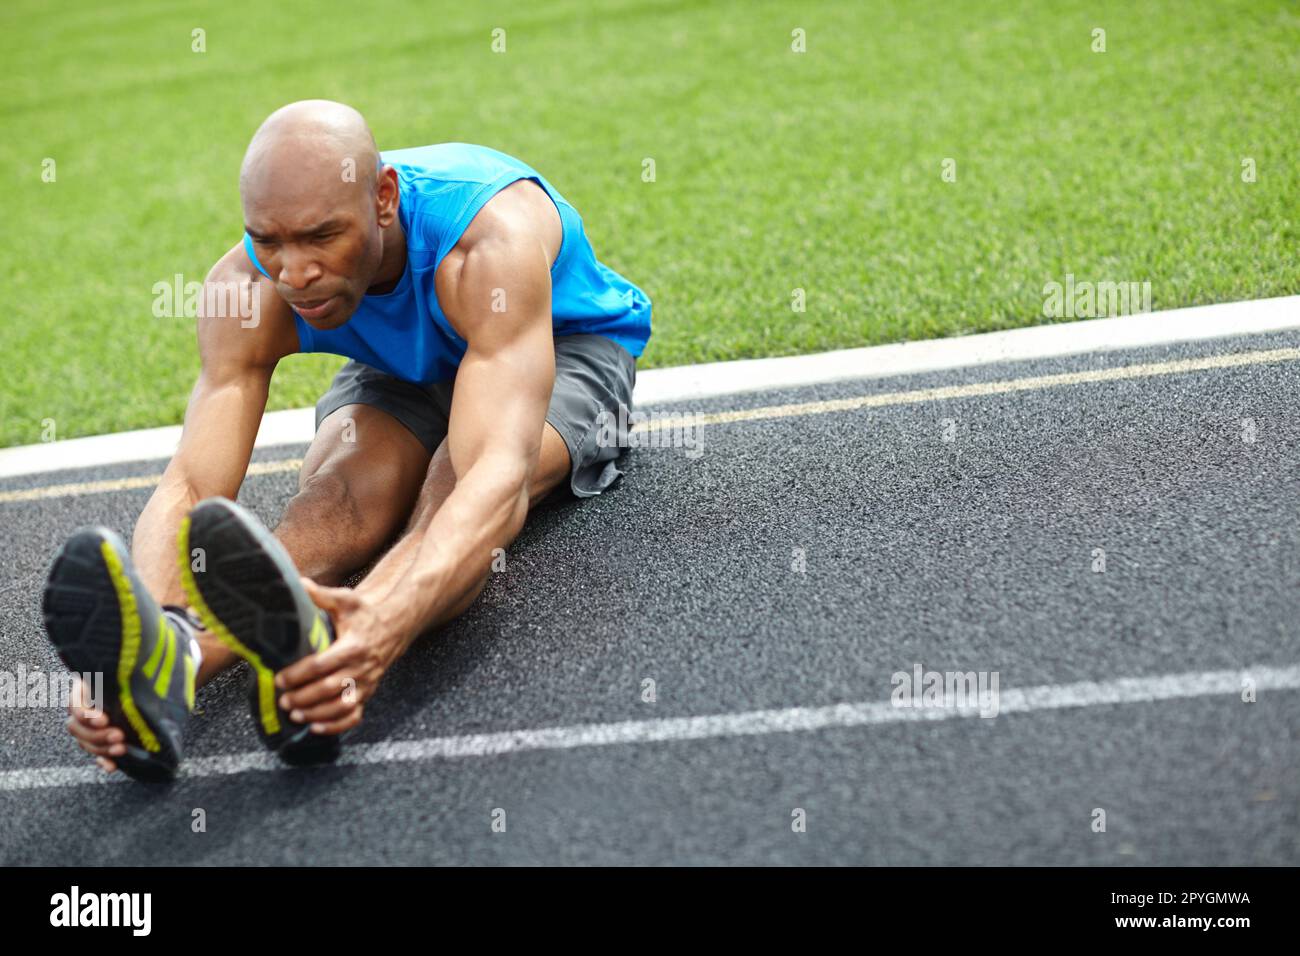 Er ist vor dem Lauf aufgewacht. Aufnahme über die gesamte Länge eines männlichen Athleten, der seine Muskeln auf der Rennstrecke dehnt. Stockfoto